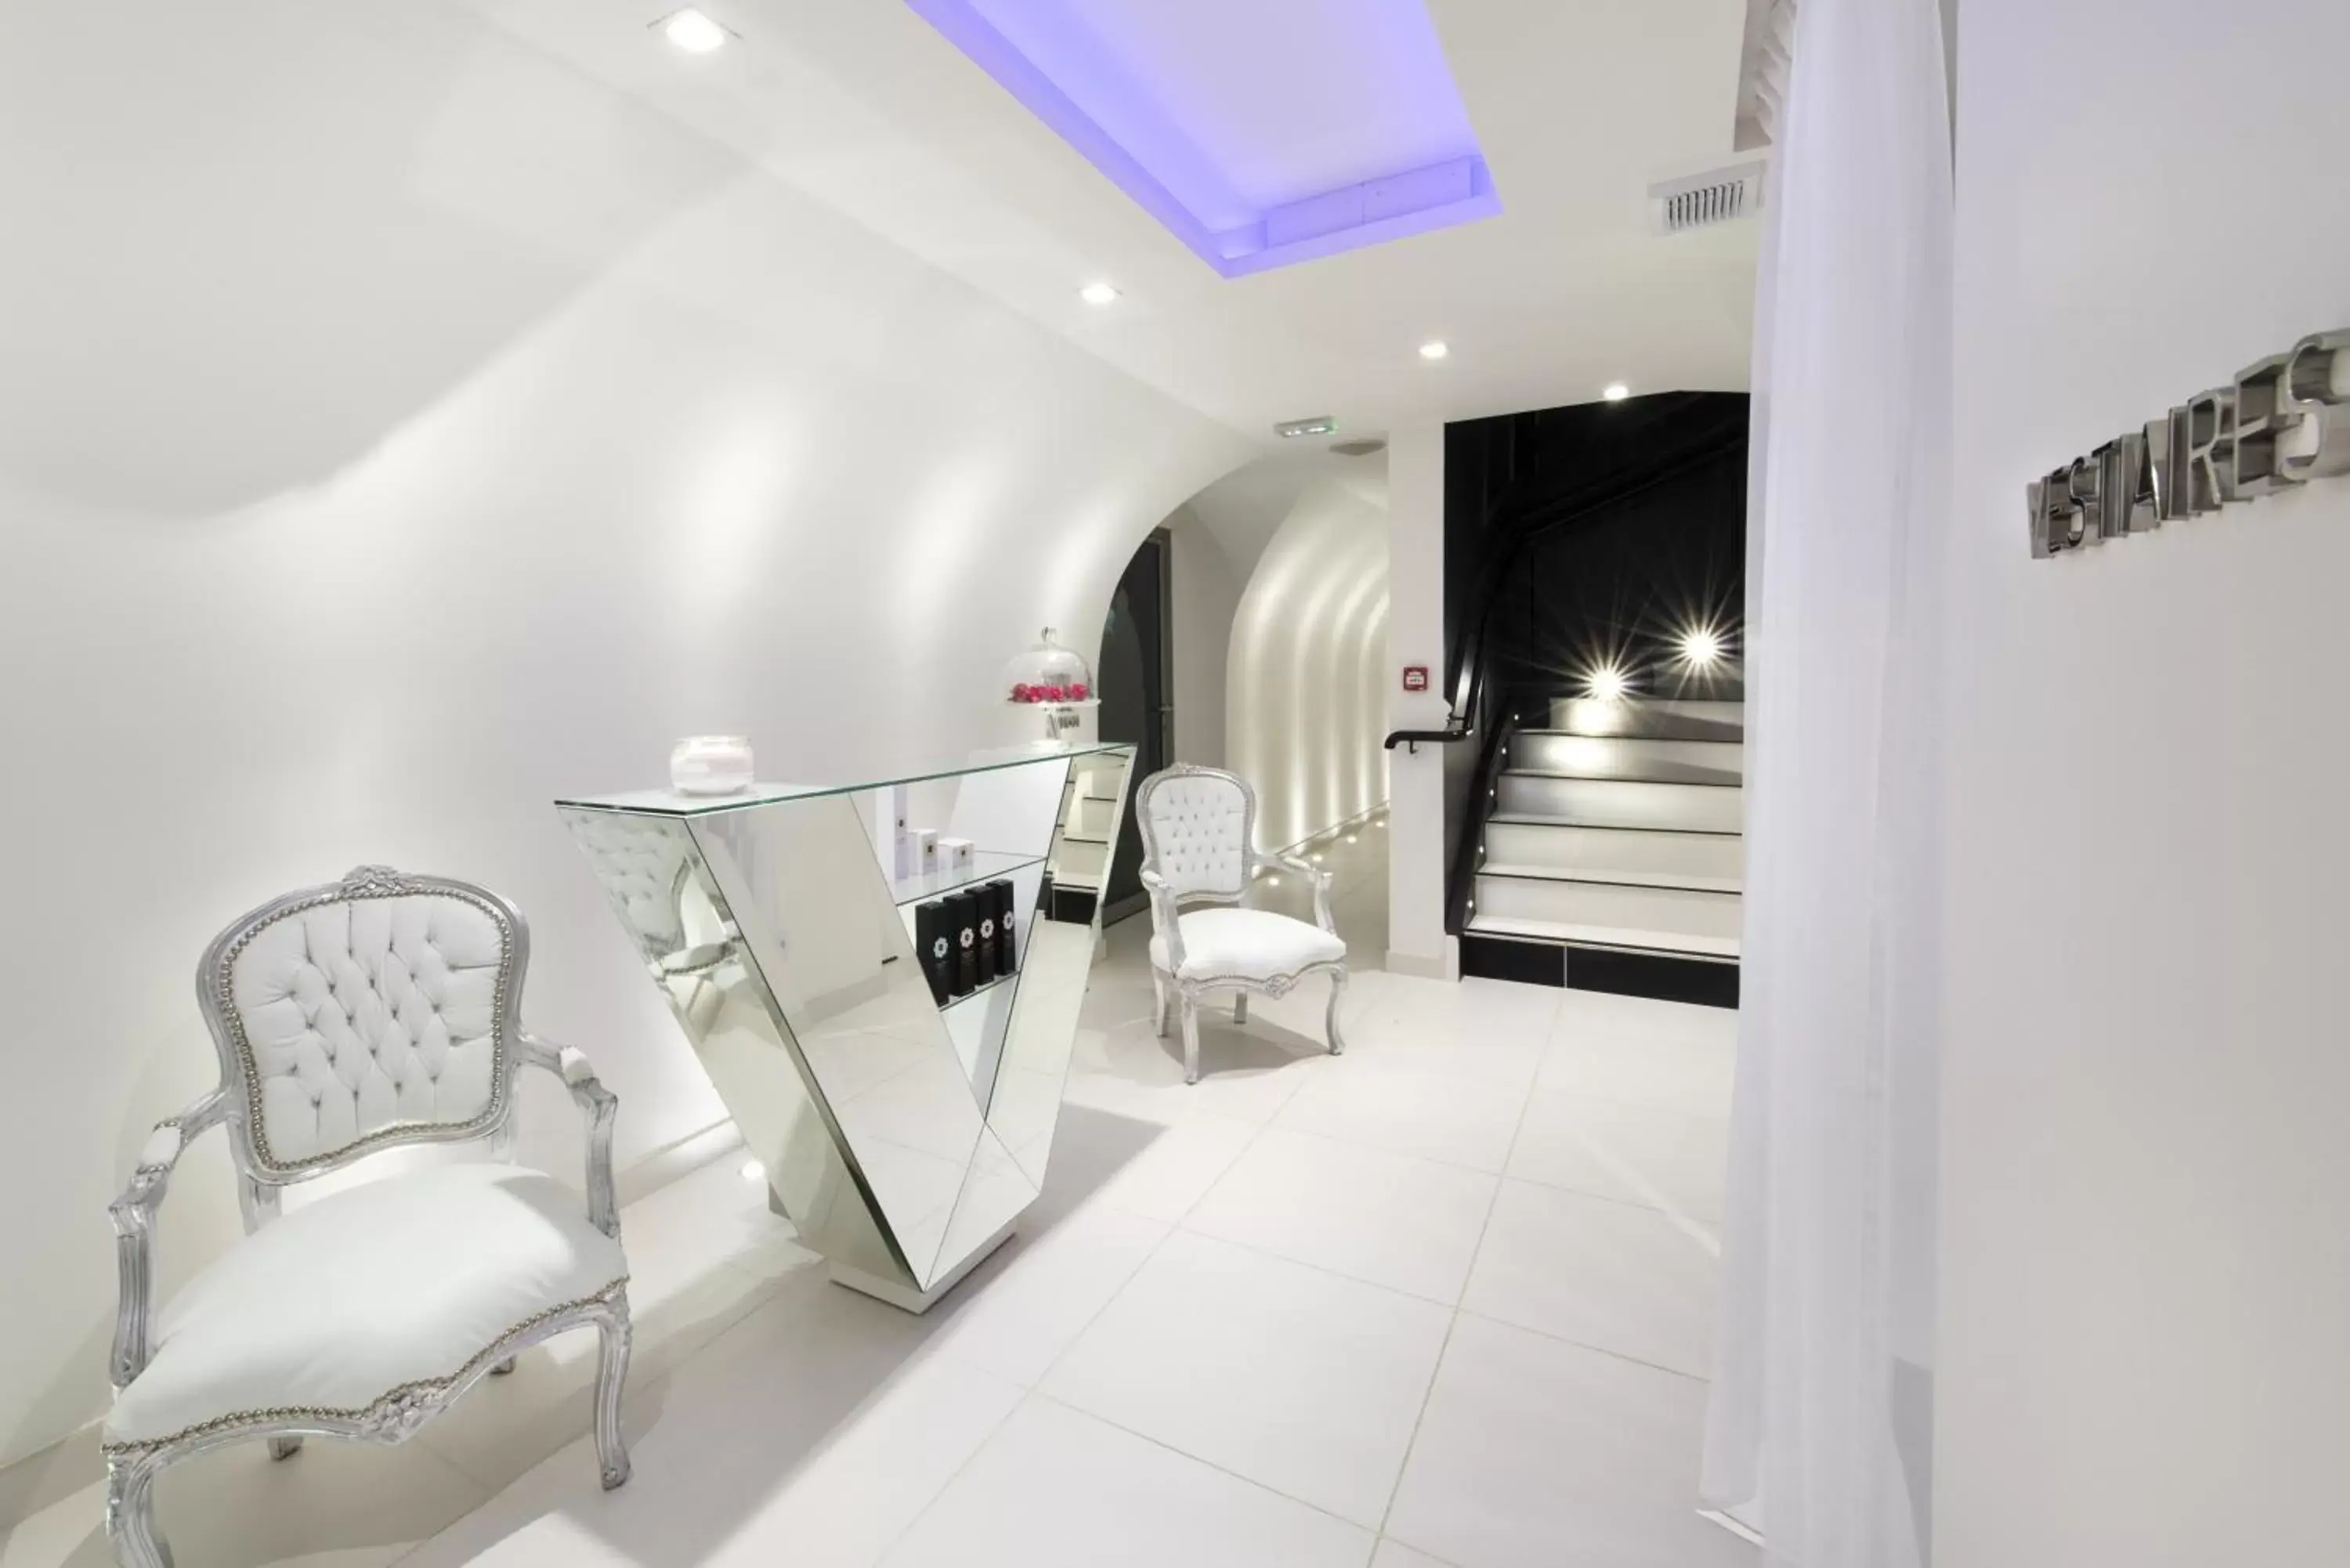 Spa and wellness centre/facilities, Bathroom in Vertigo, a Member of Design Hotels